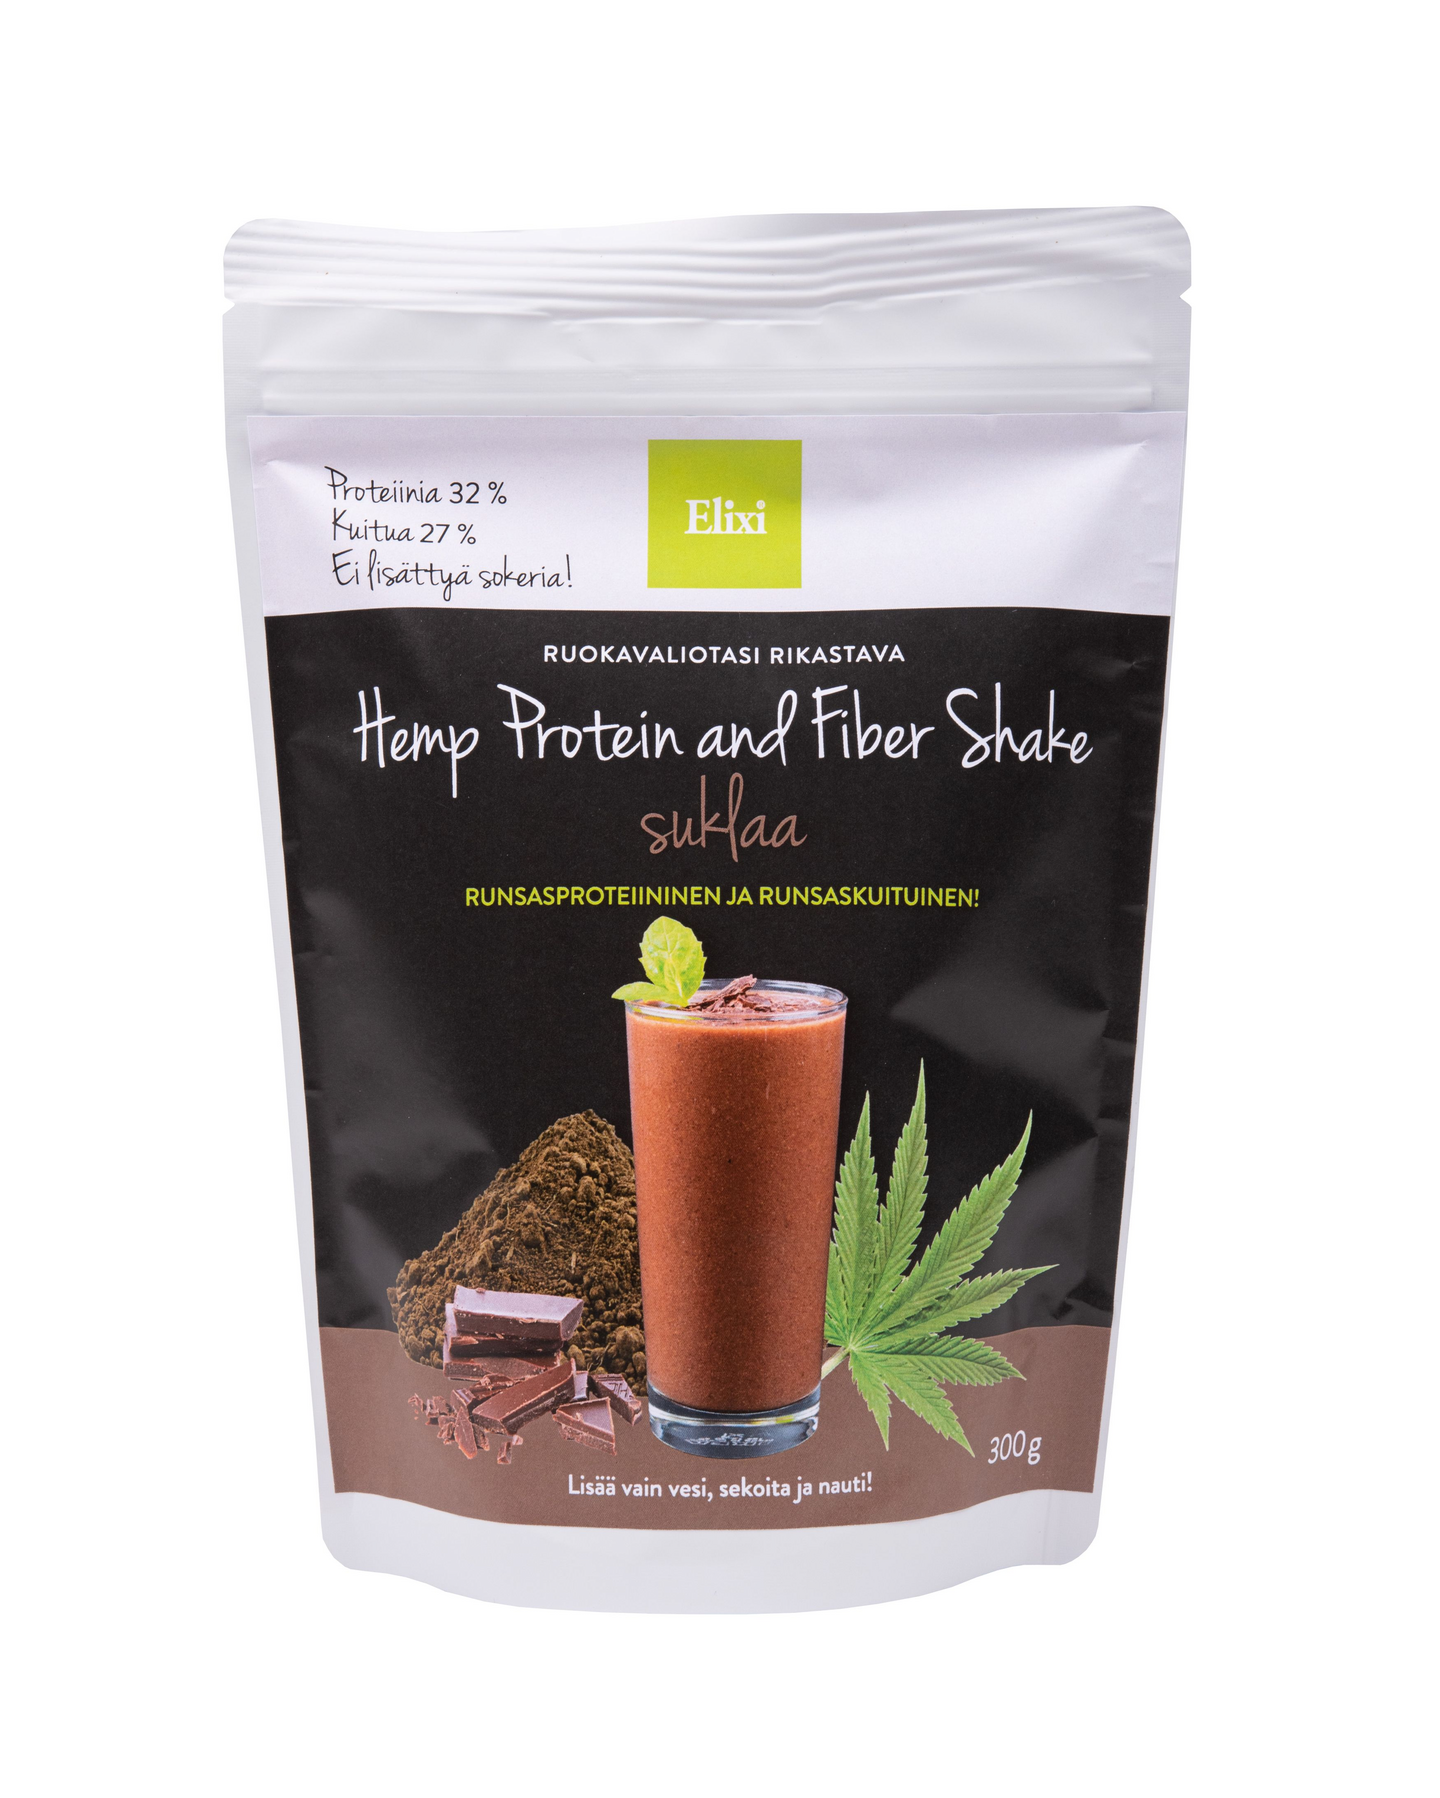 Elixi Hemp protein and fiber shake 300 g suklaa